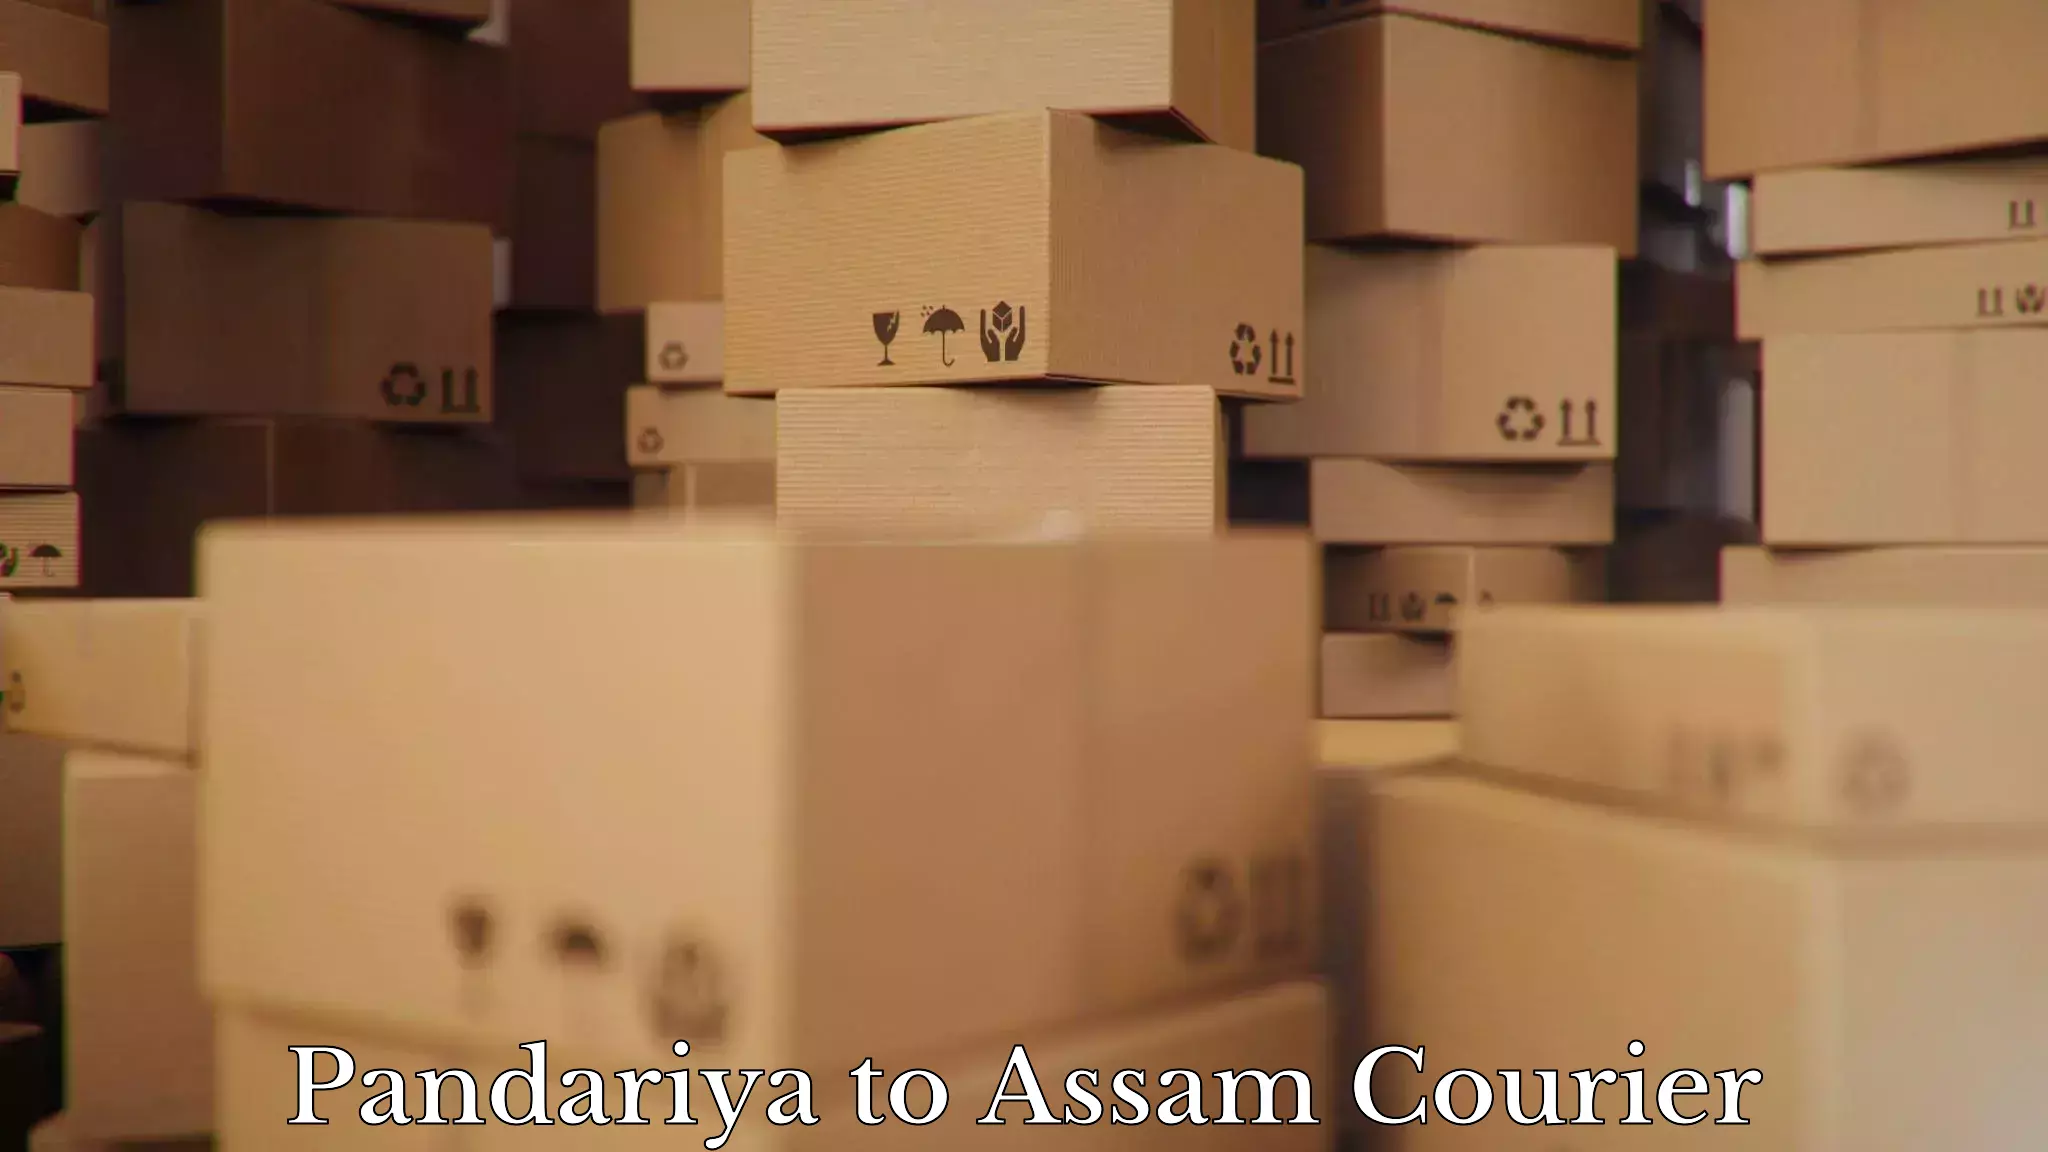 Furniture moving experts in Pandariya to Lala Assam